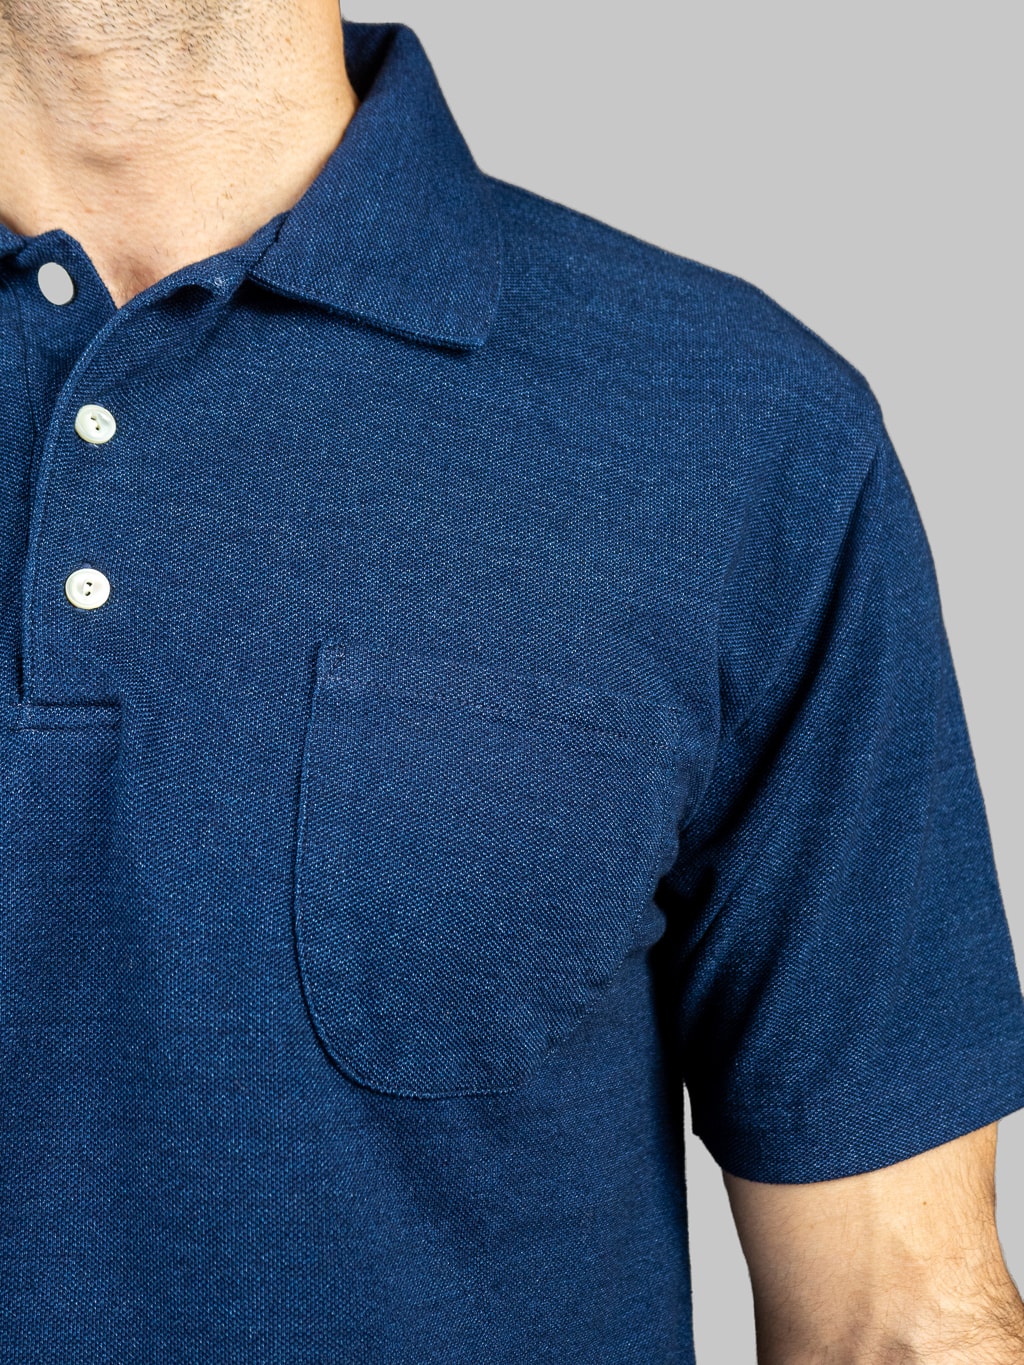 studio dartisan indigo dyed pique polo shirt  chest